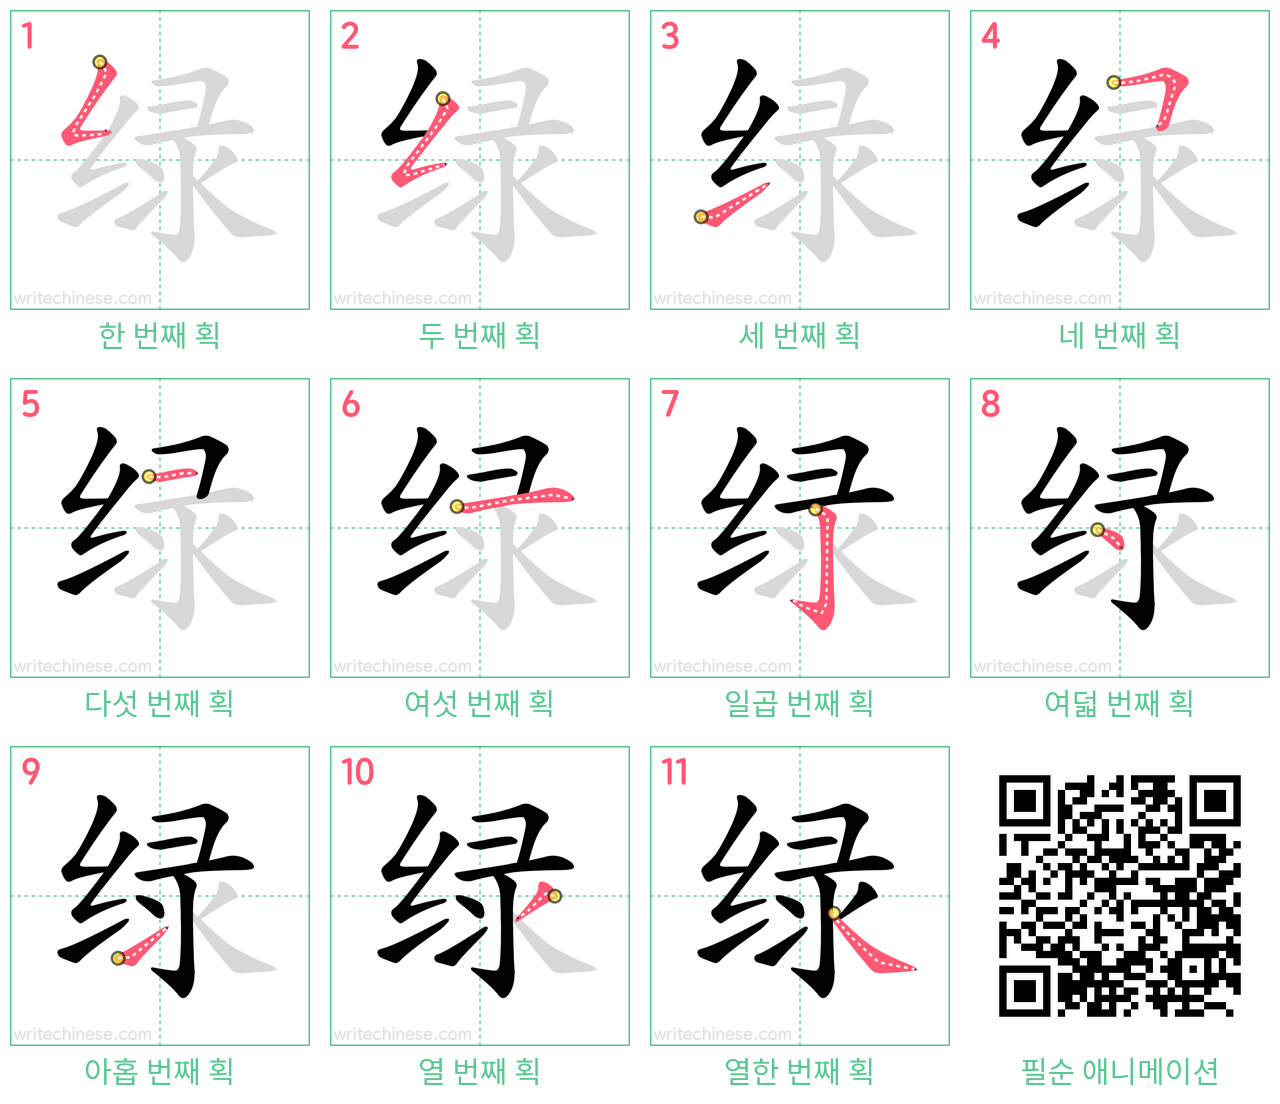 绿 step-by-step stroke order diagrams